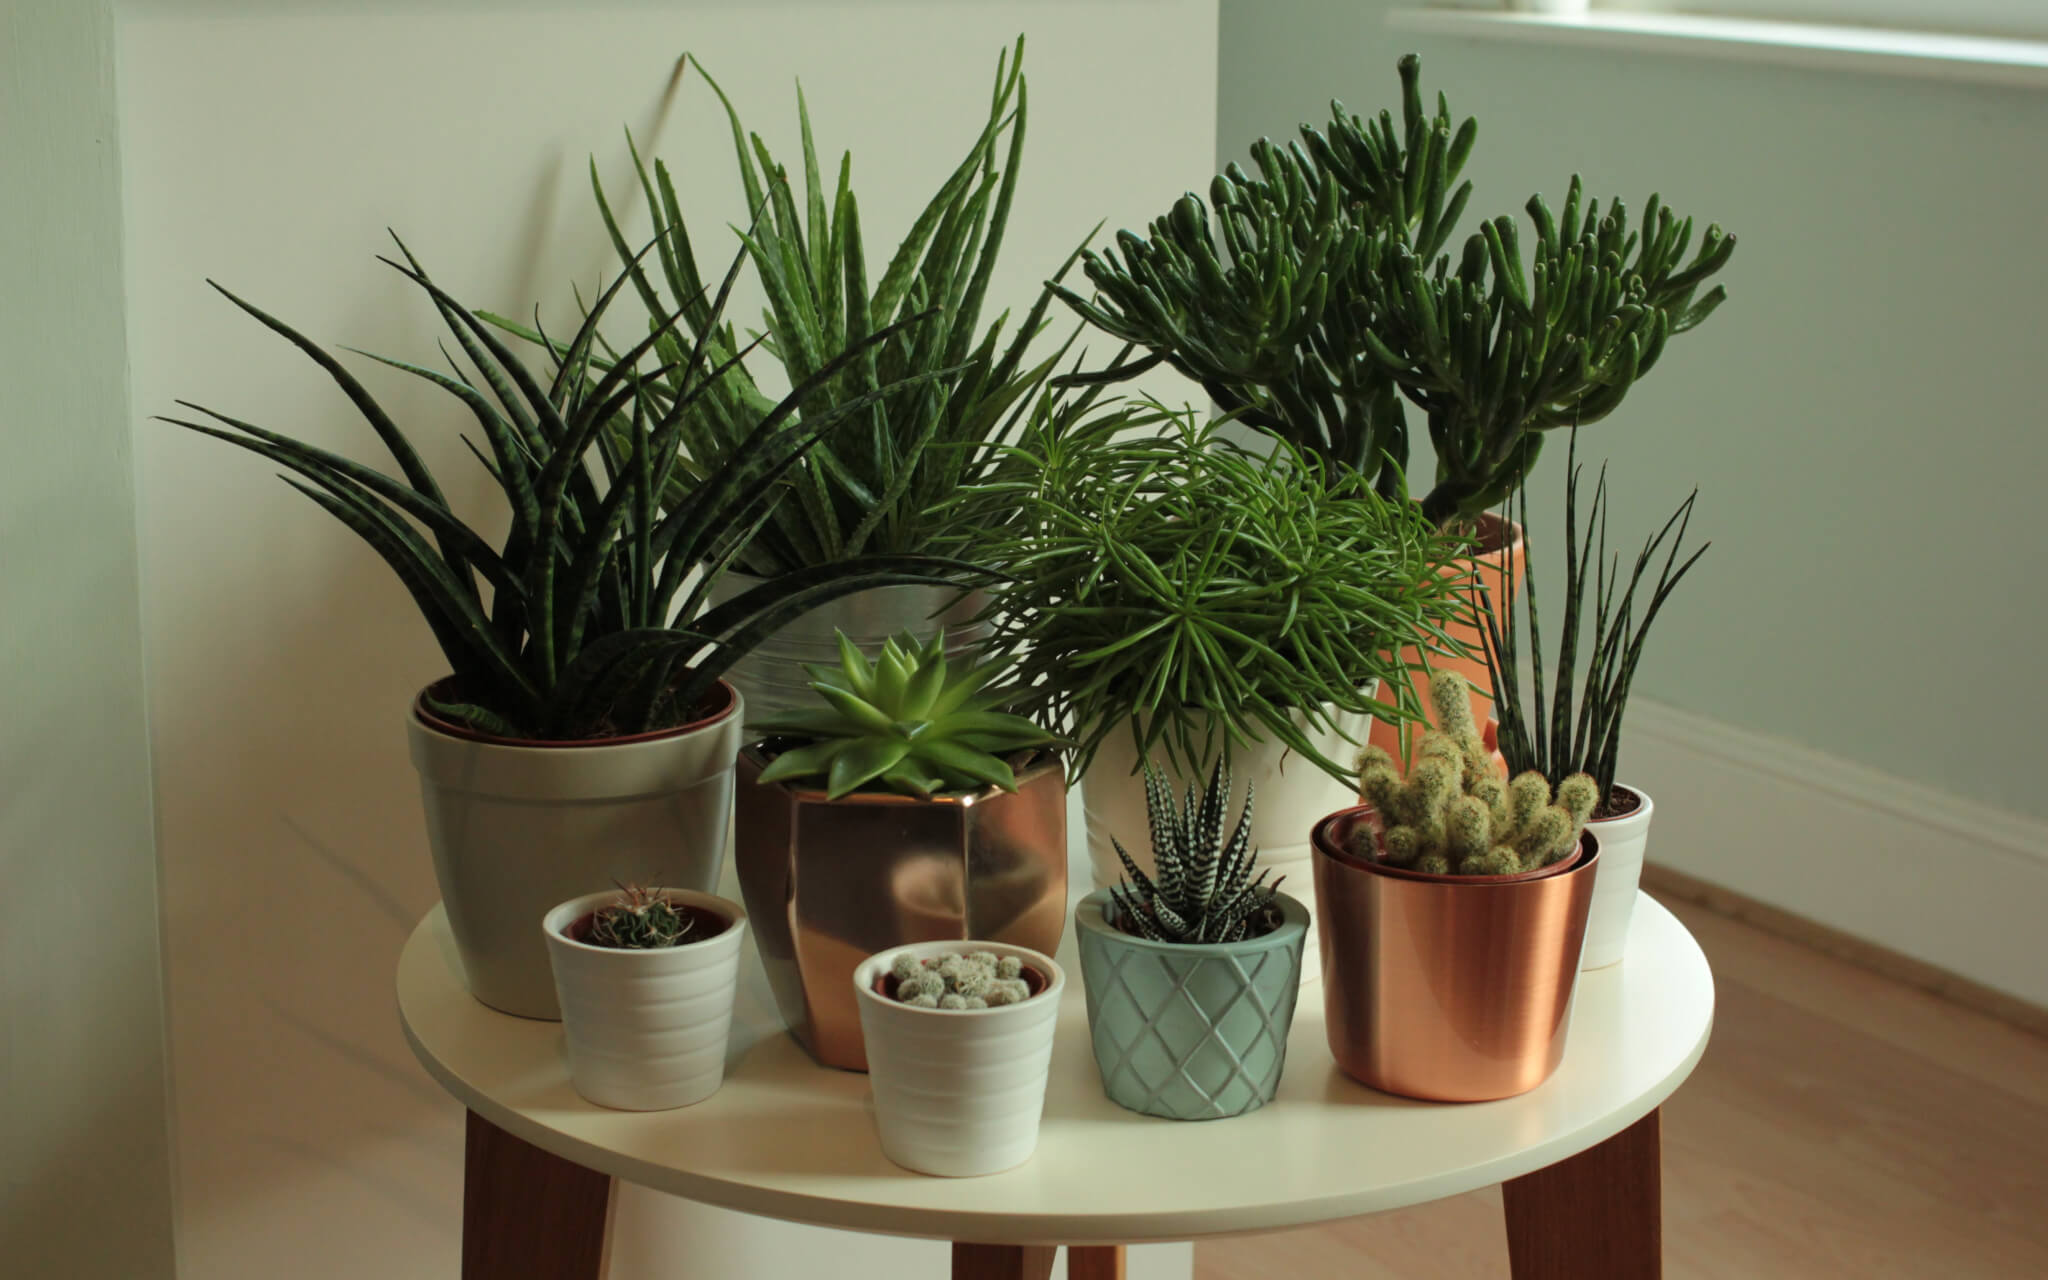 Growing succulents indoors